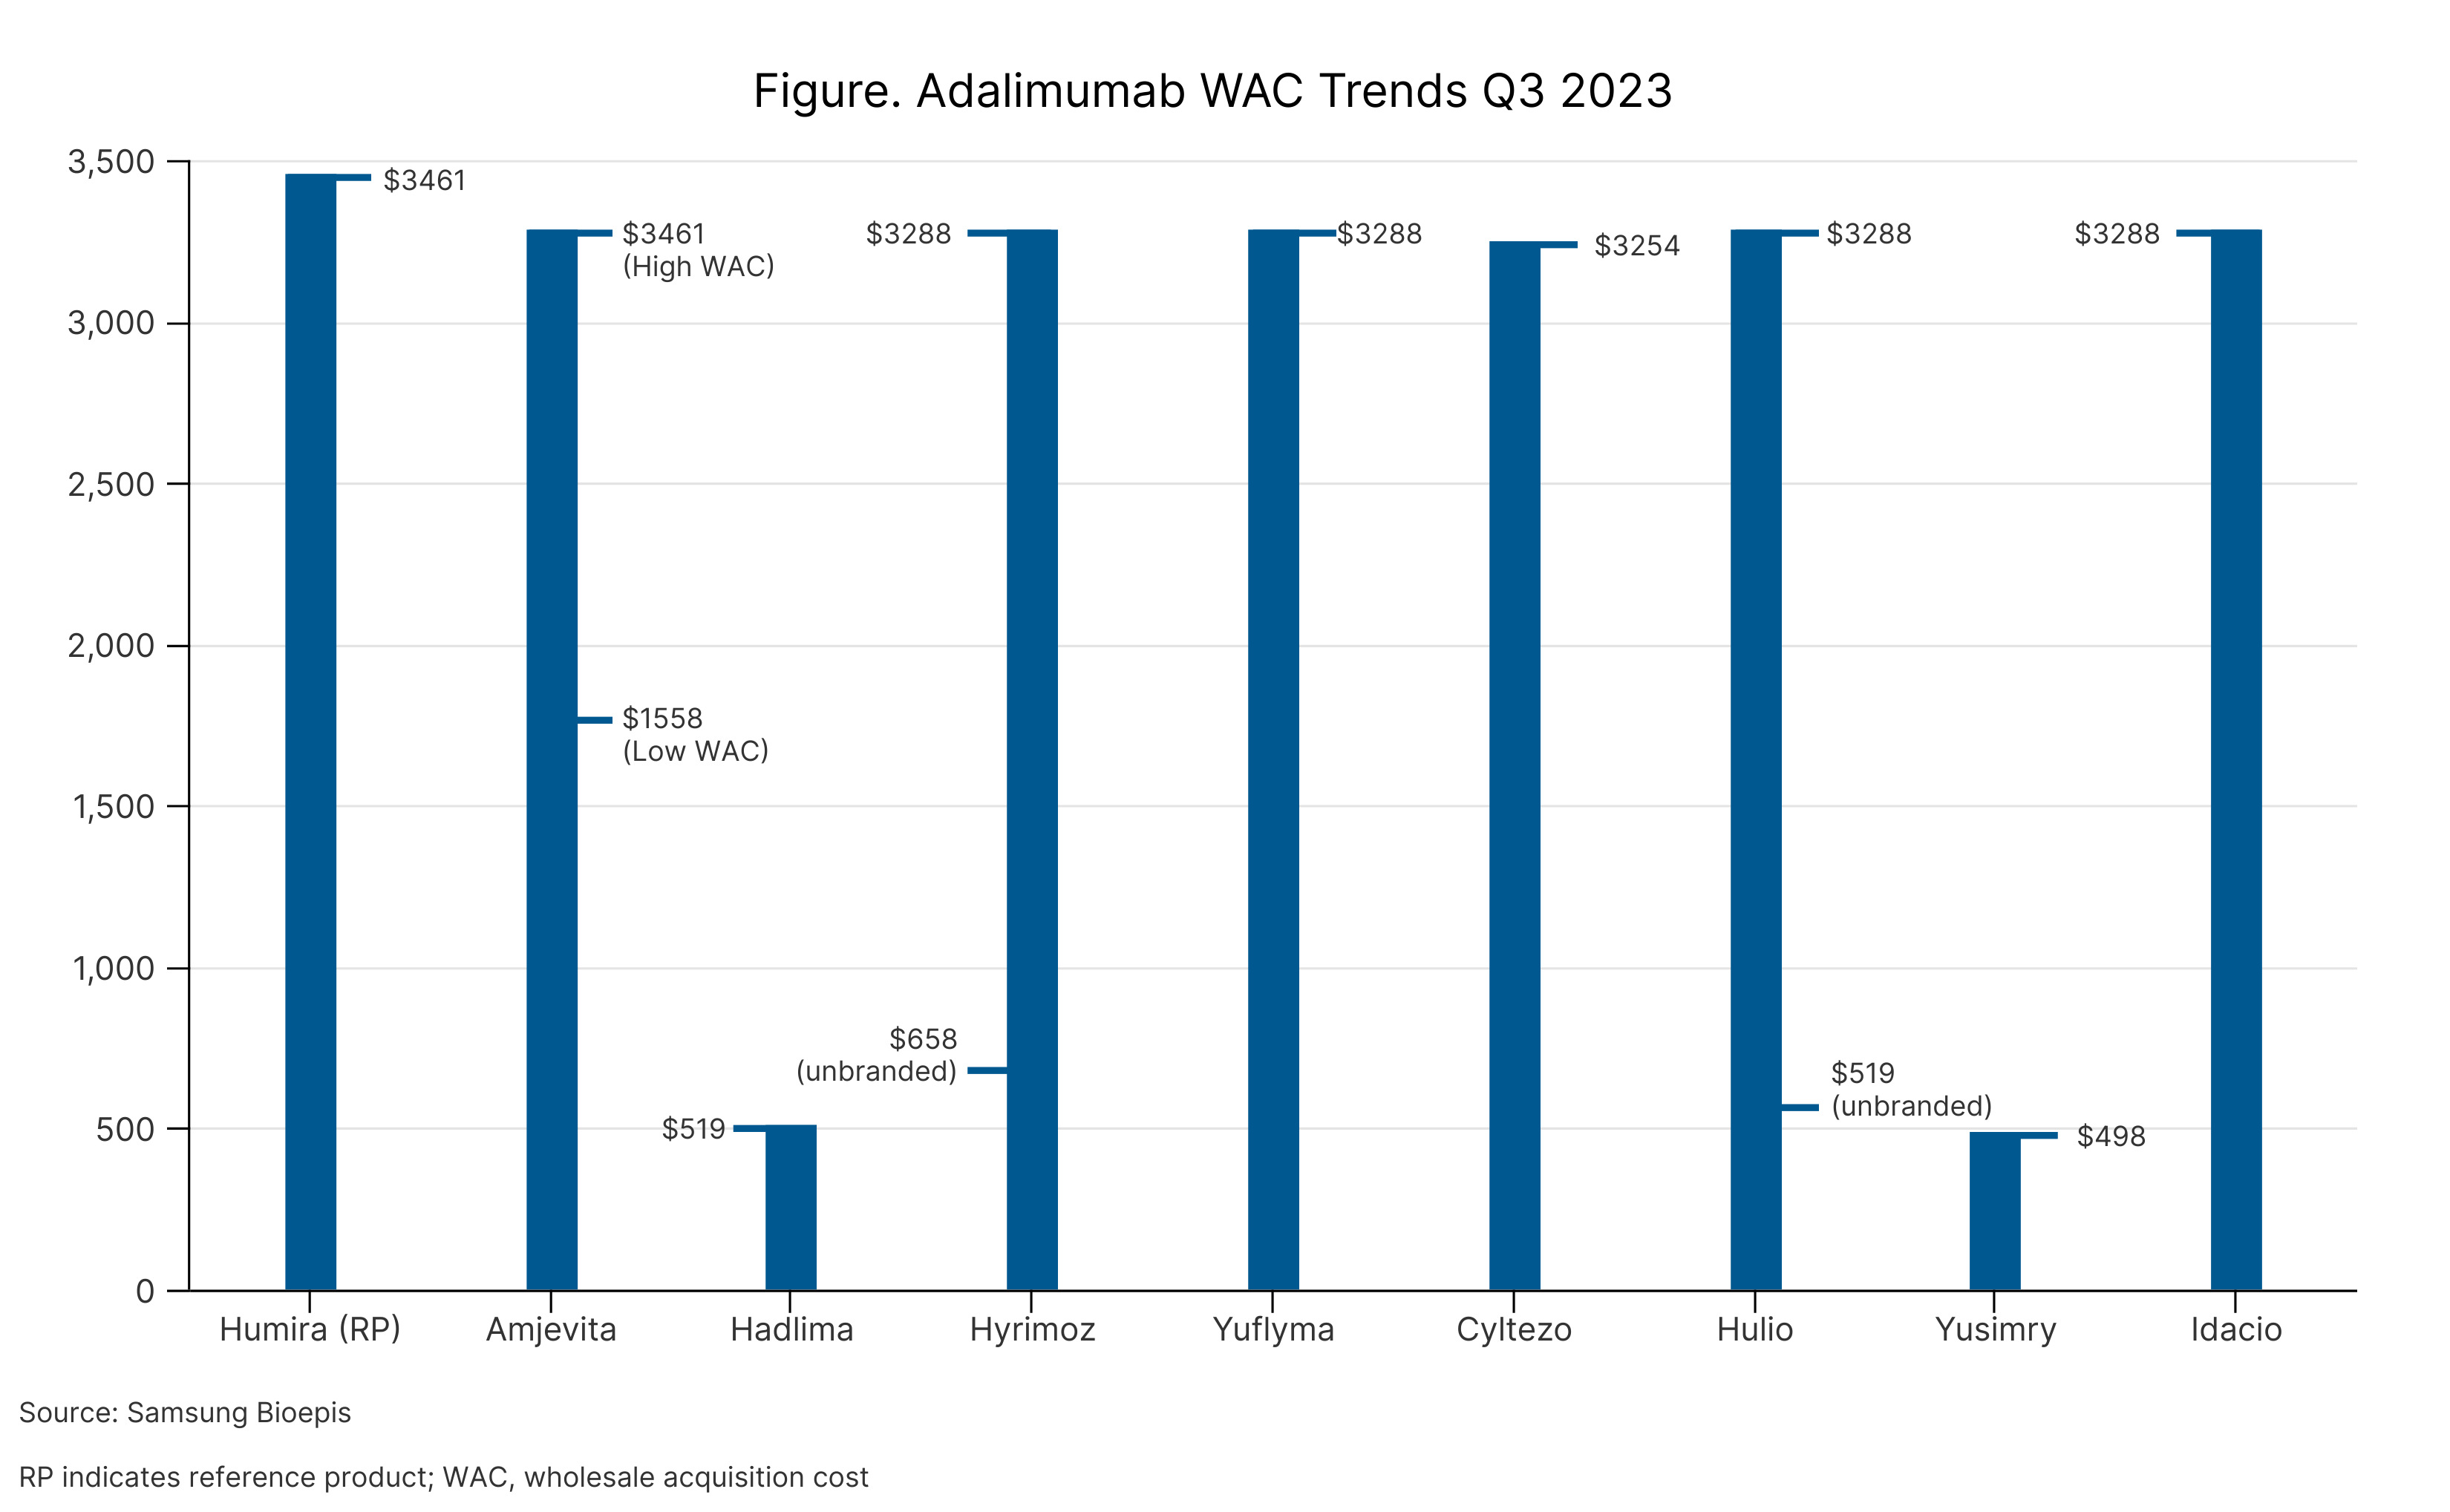 Adalimumab WAC Trends Q3 2023